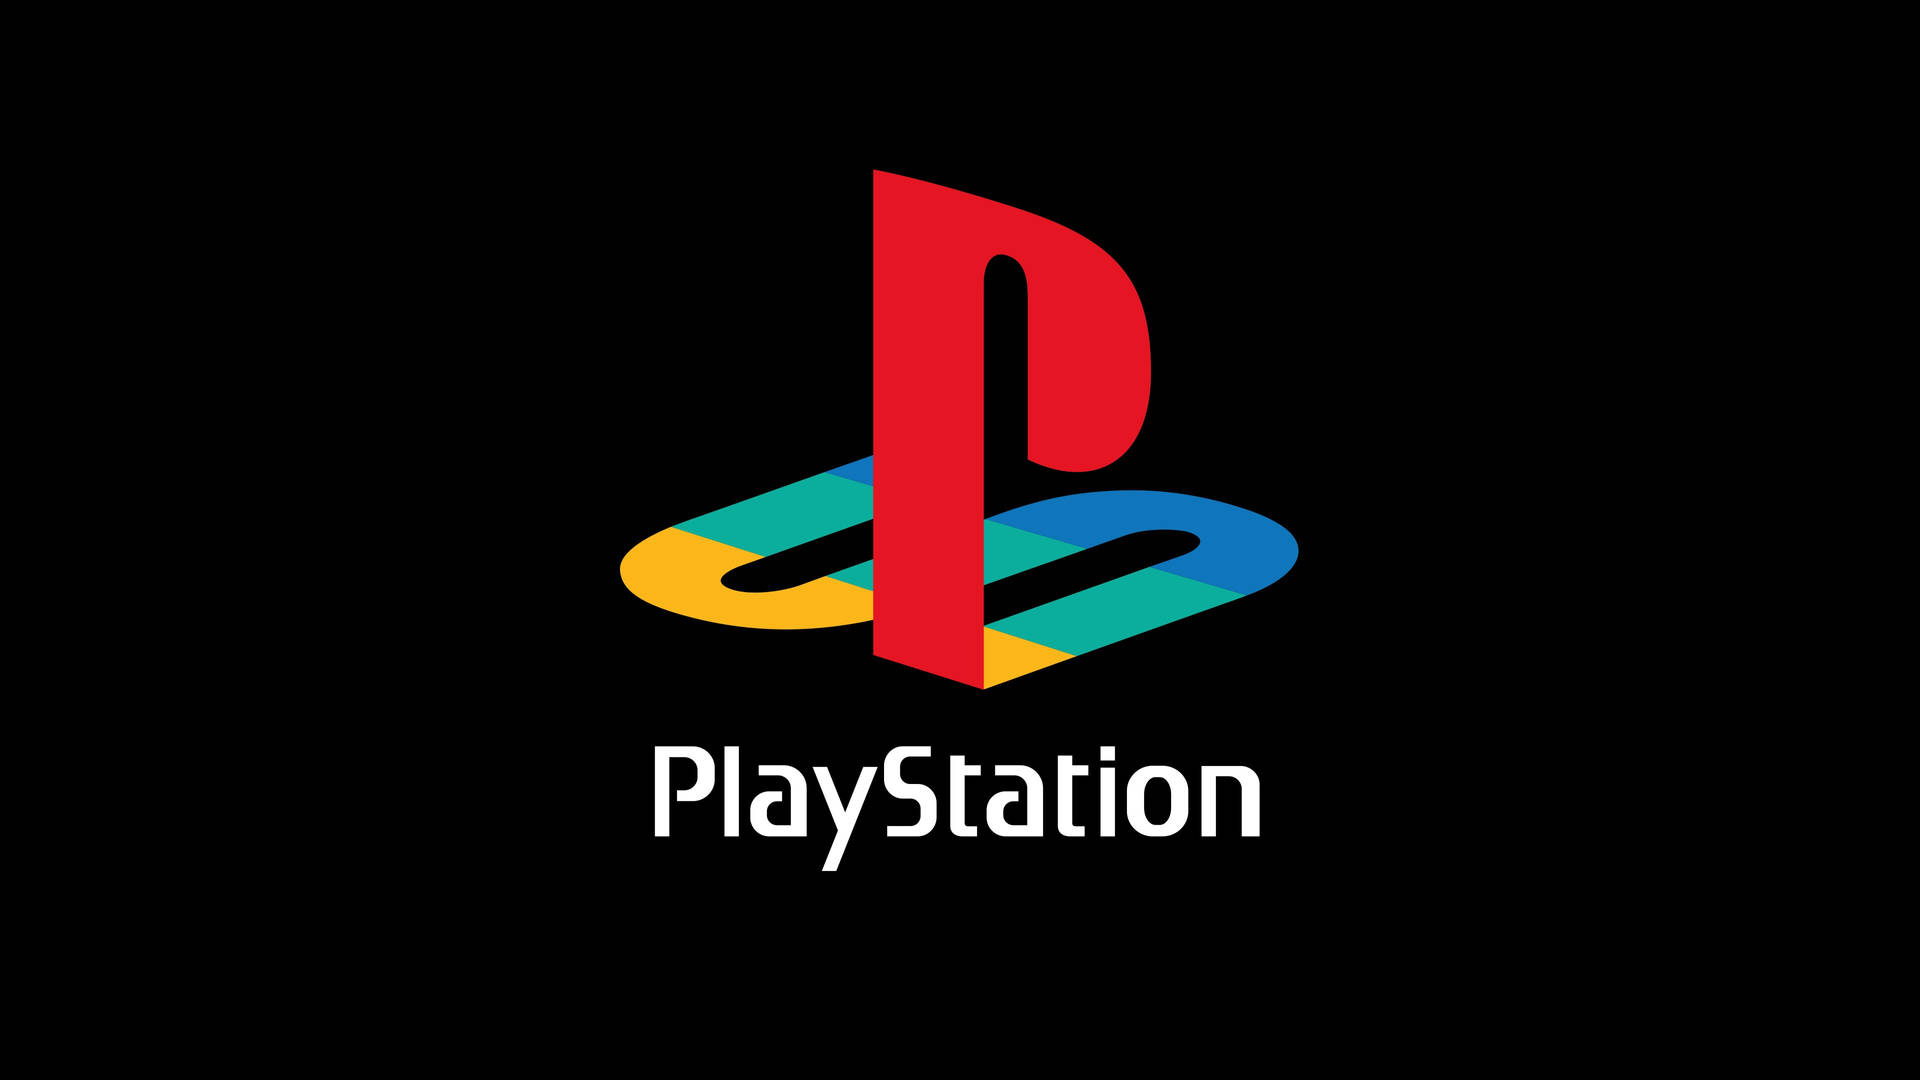 Playstation Gaming Logo Wallpaper